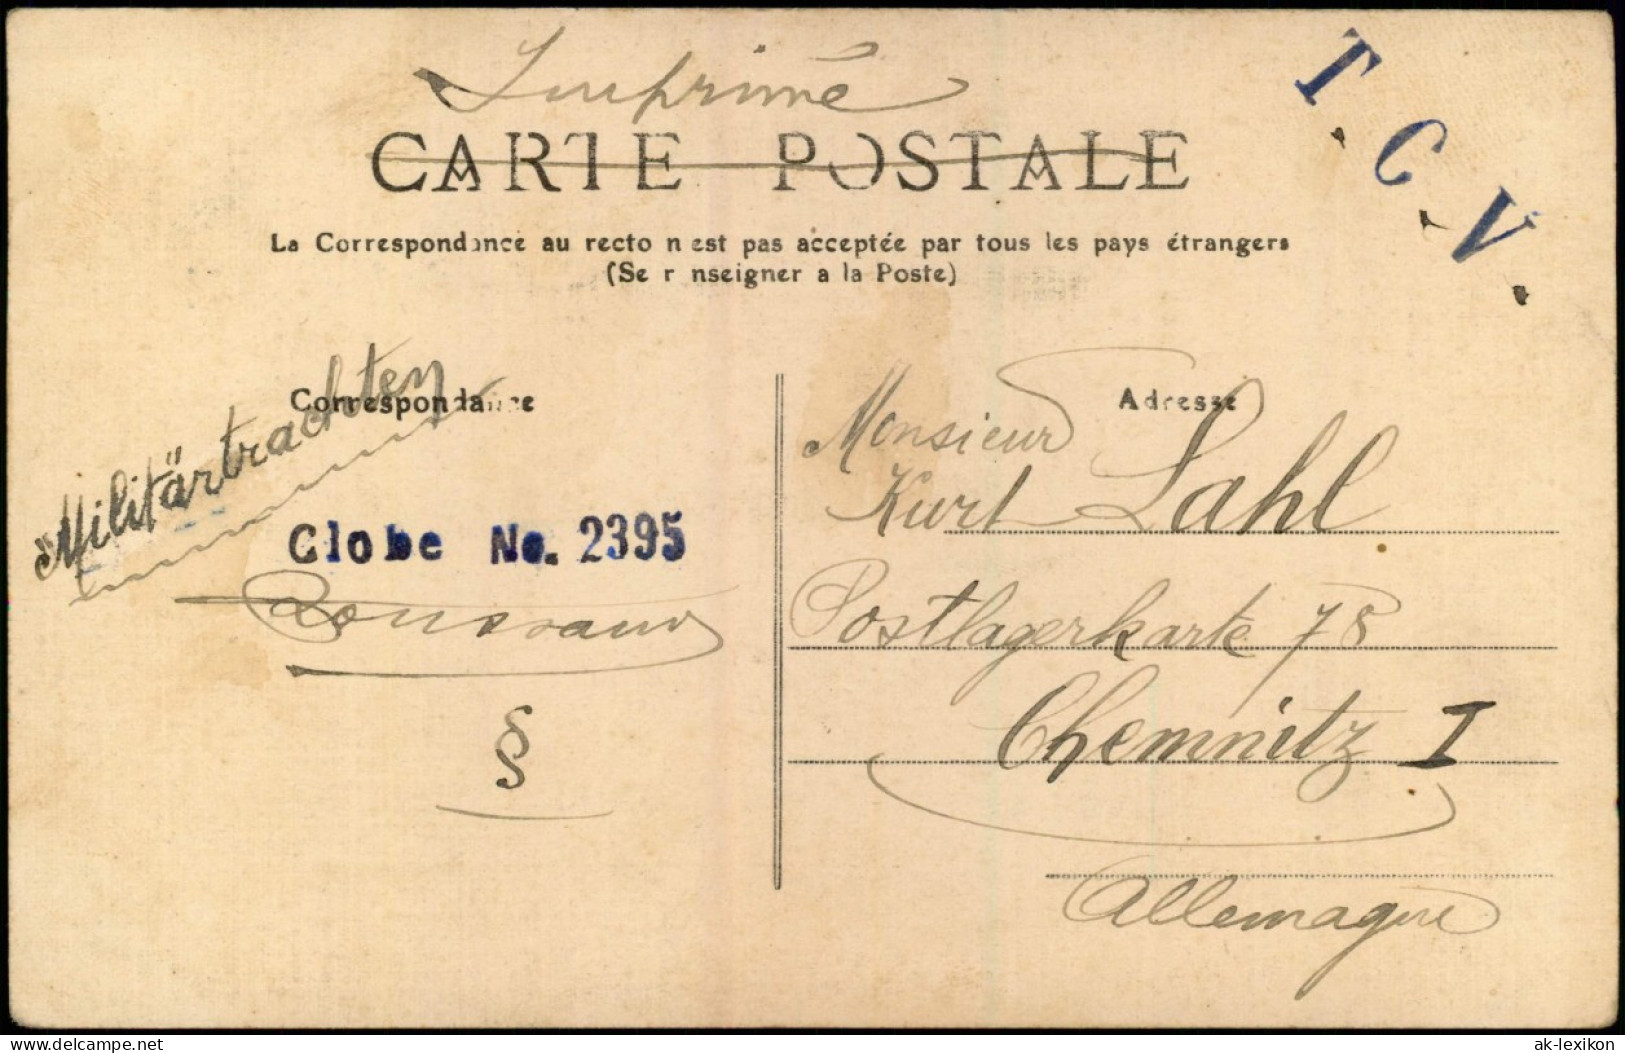 CPA Bordeaux La Passerelle 1911 - Bordeaux